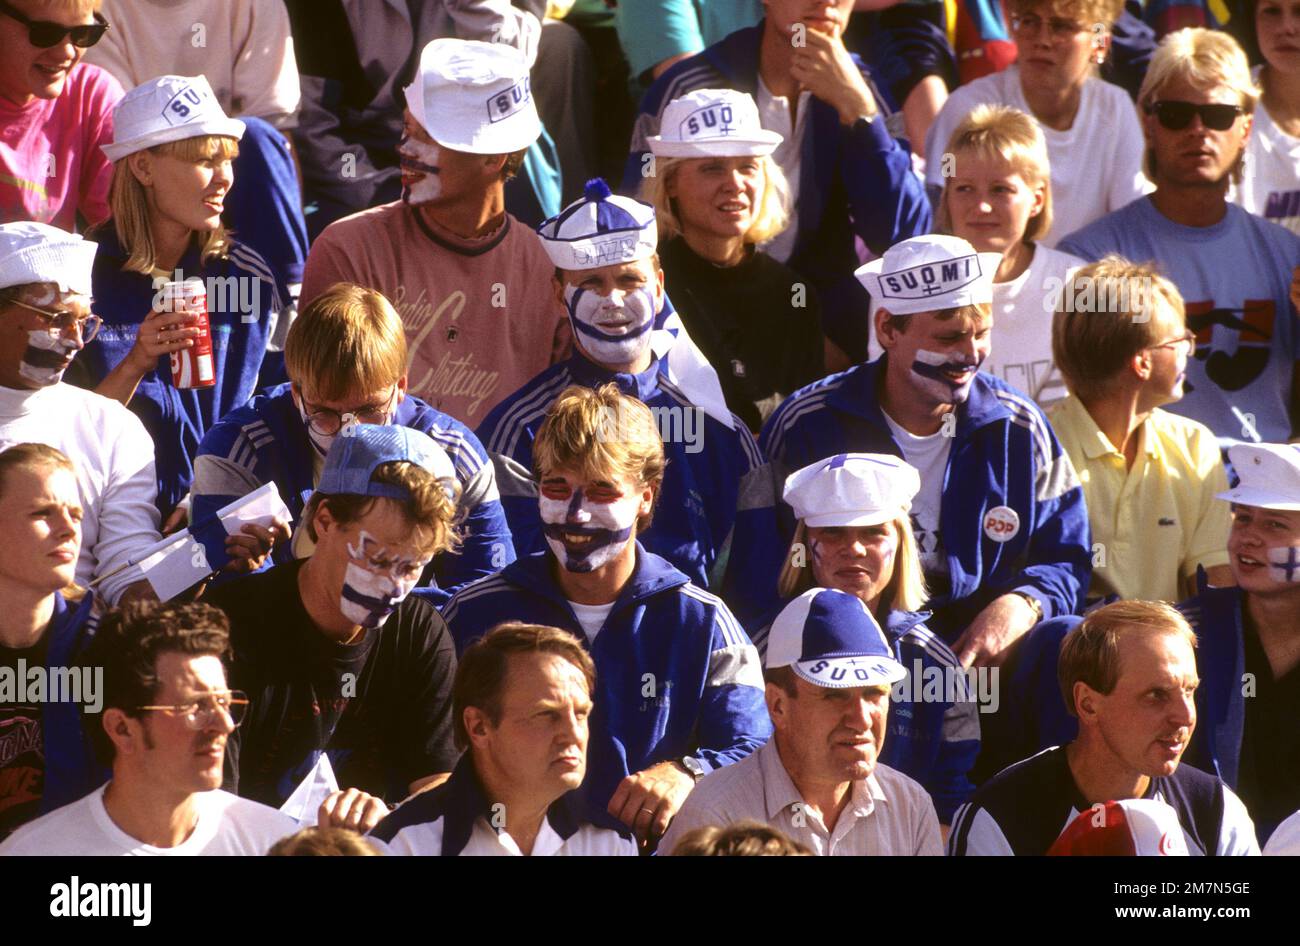 PUBLIC FINLANDAIS avec des chapeaux de fanny au championnat national d'athlétisme contre la Suède à Stockholm Banque D'Images